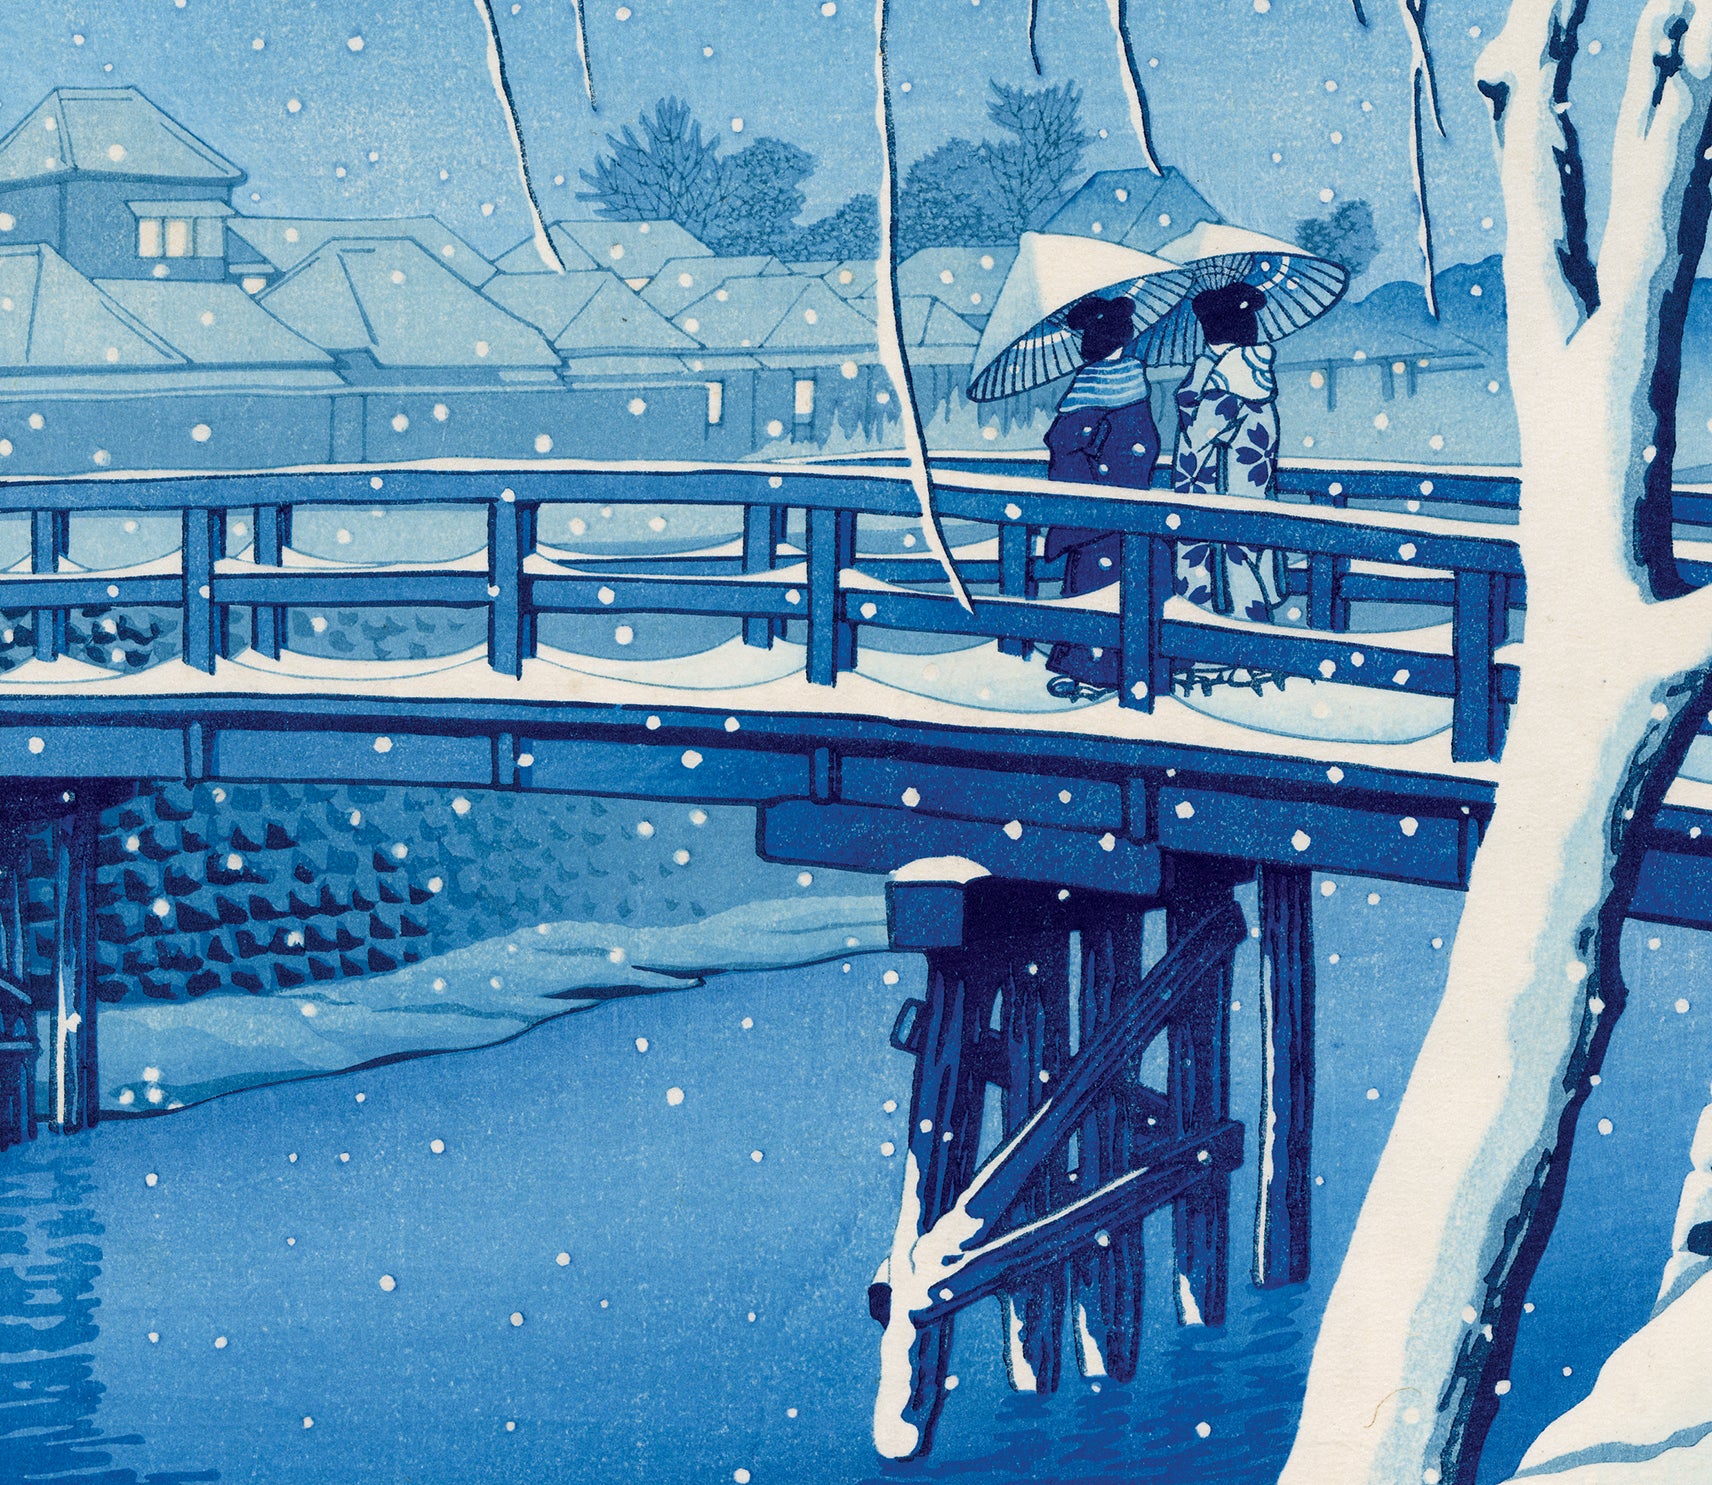 GINZA絵画館】川瀬巴水 木版画「日光神橋の雪」 MA81X9Z3A5P5C - 美術品